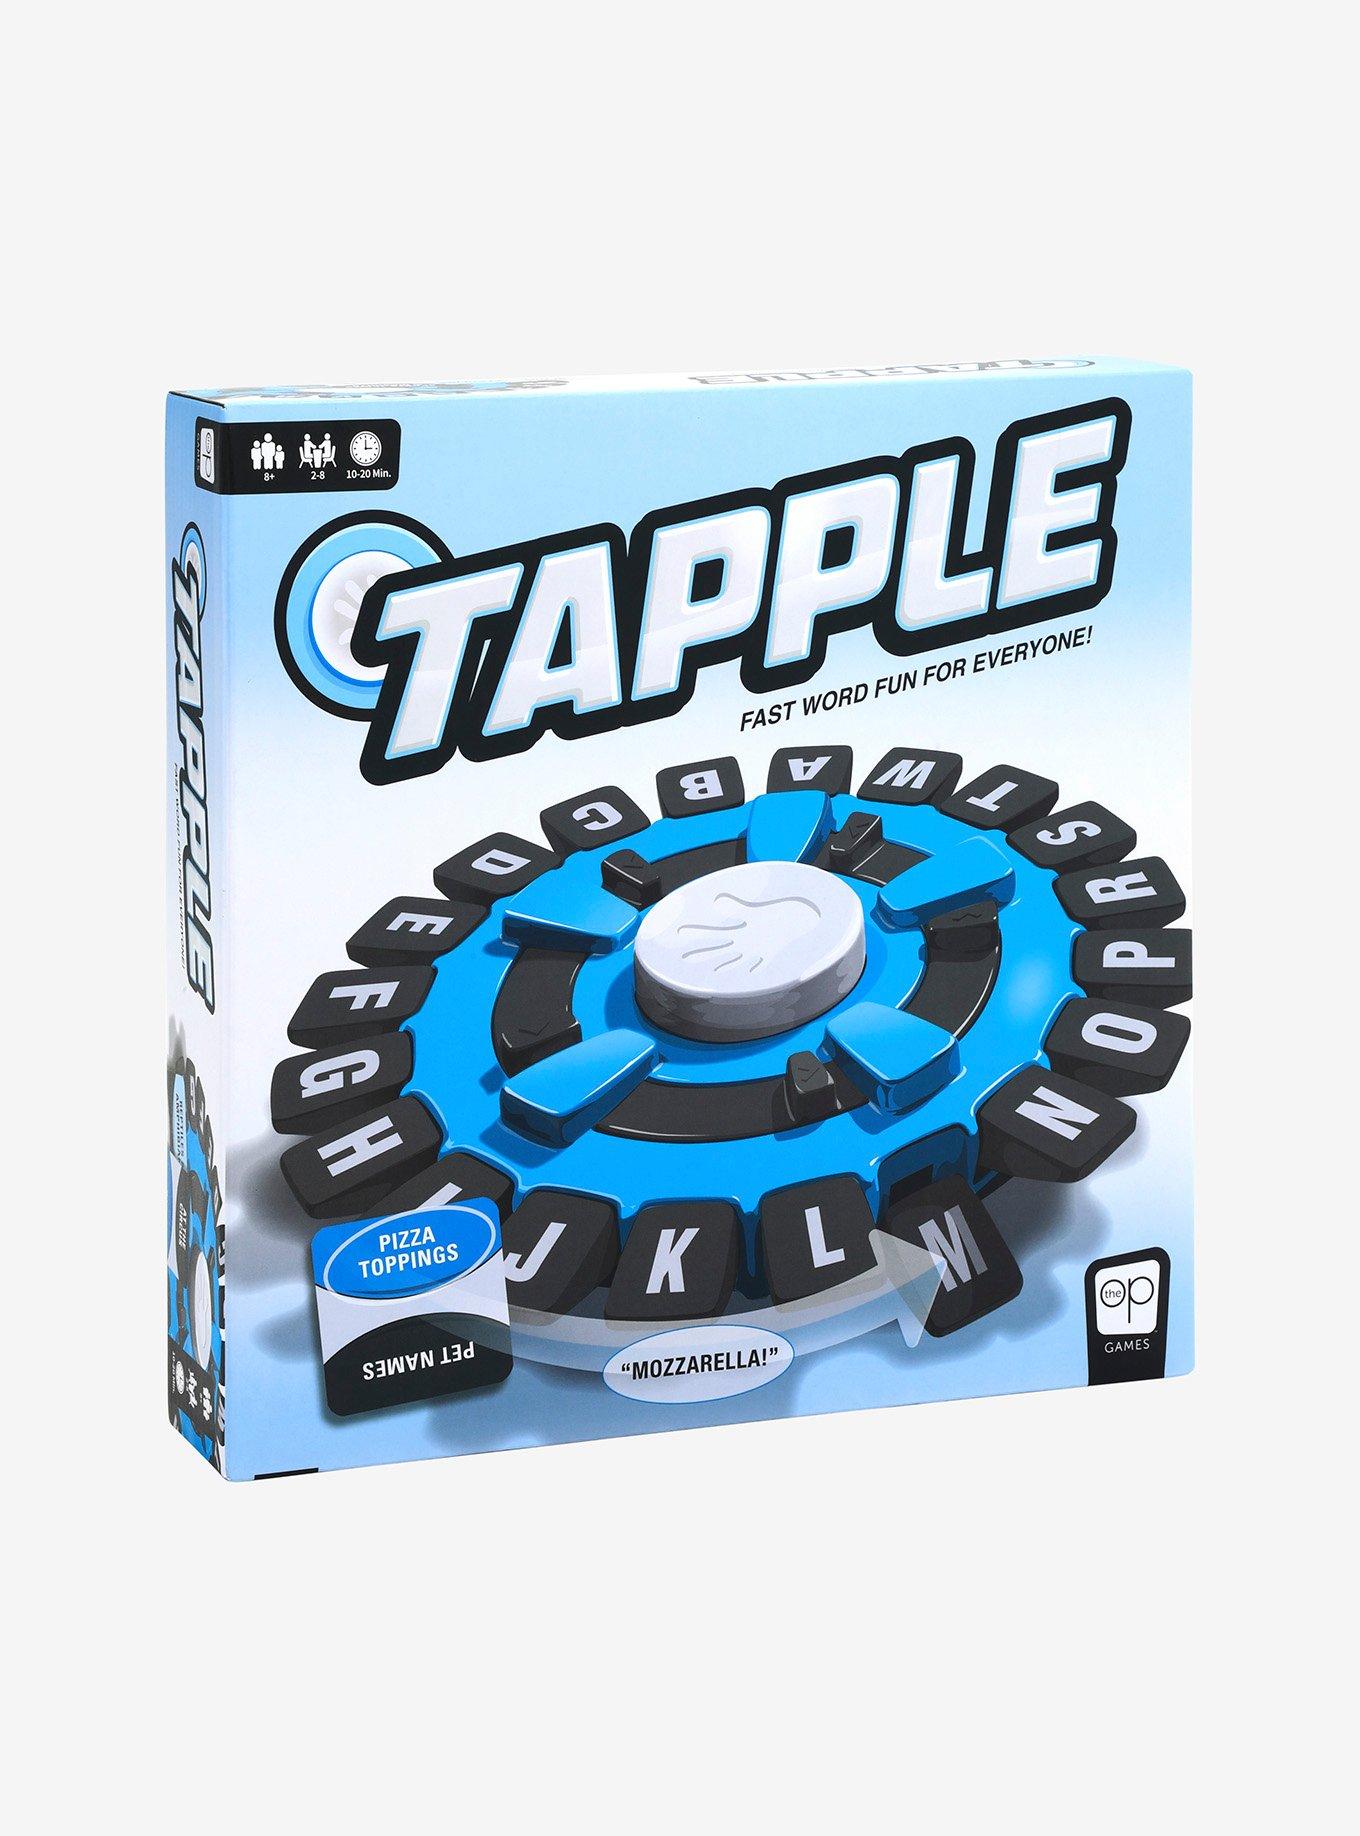 Tapple Game